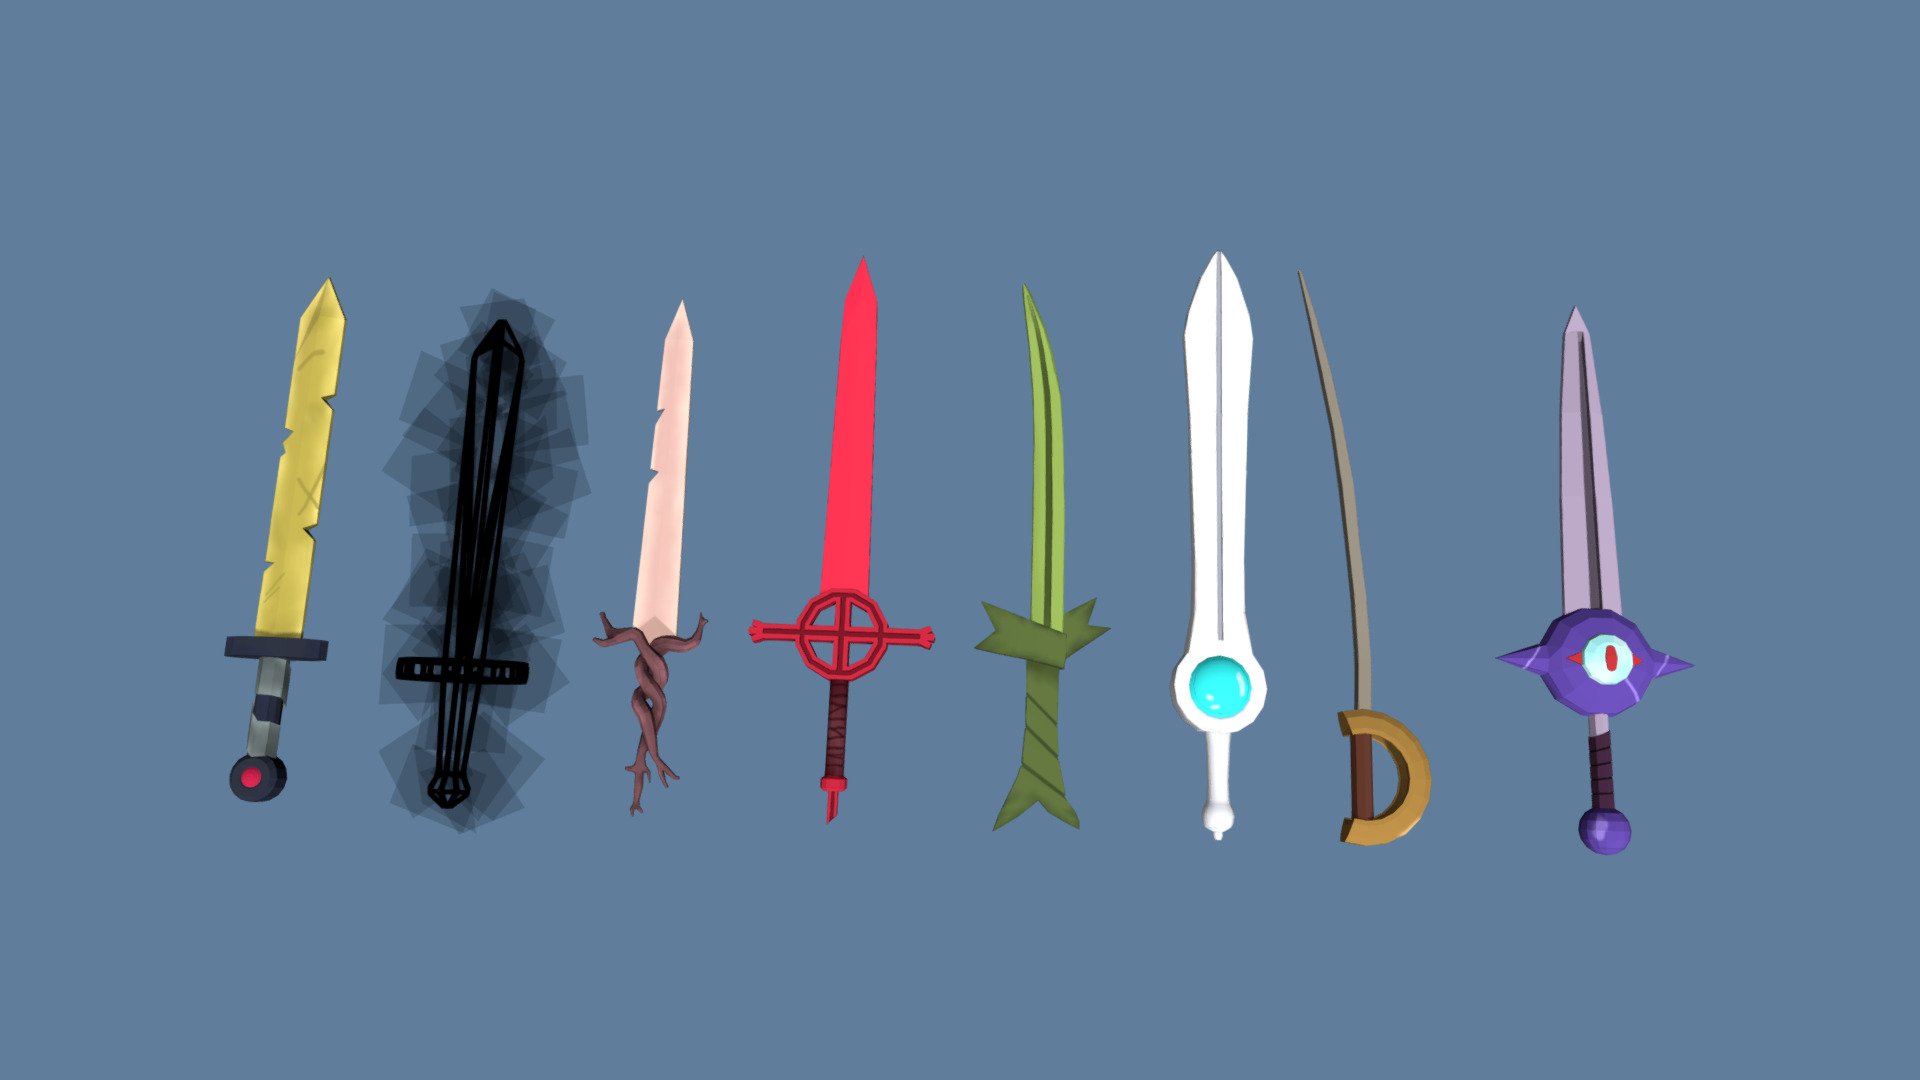 Finn's Swords